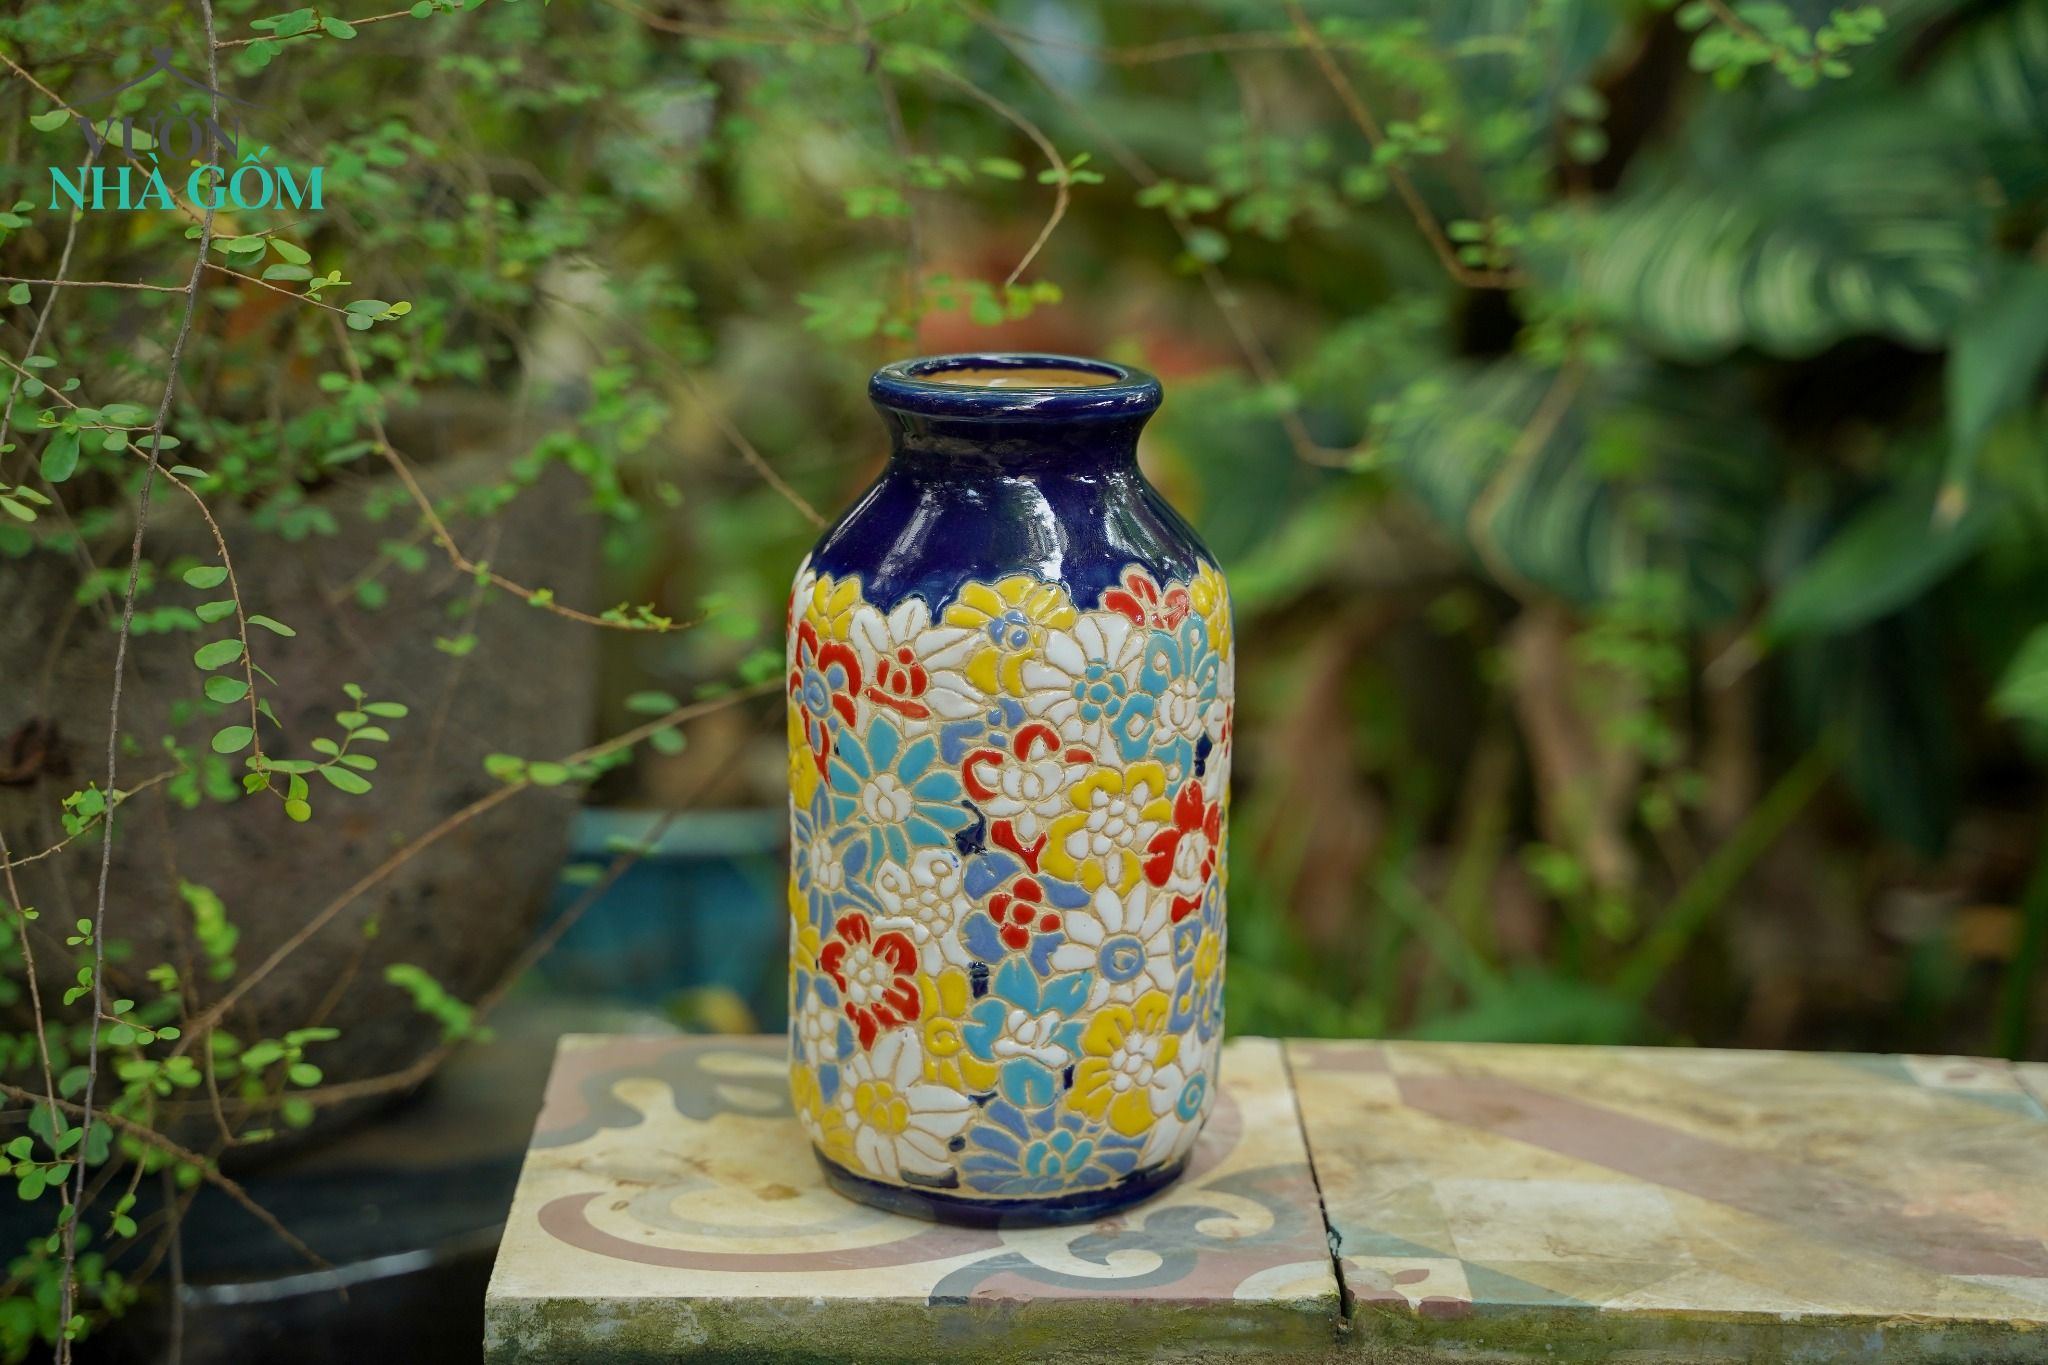  Bình cắm hoa, họa tiết khắc chìm Bách Hoa, C21xR7, gốm mỹ nghệ 